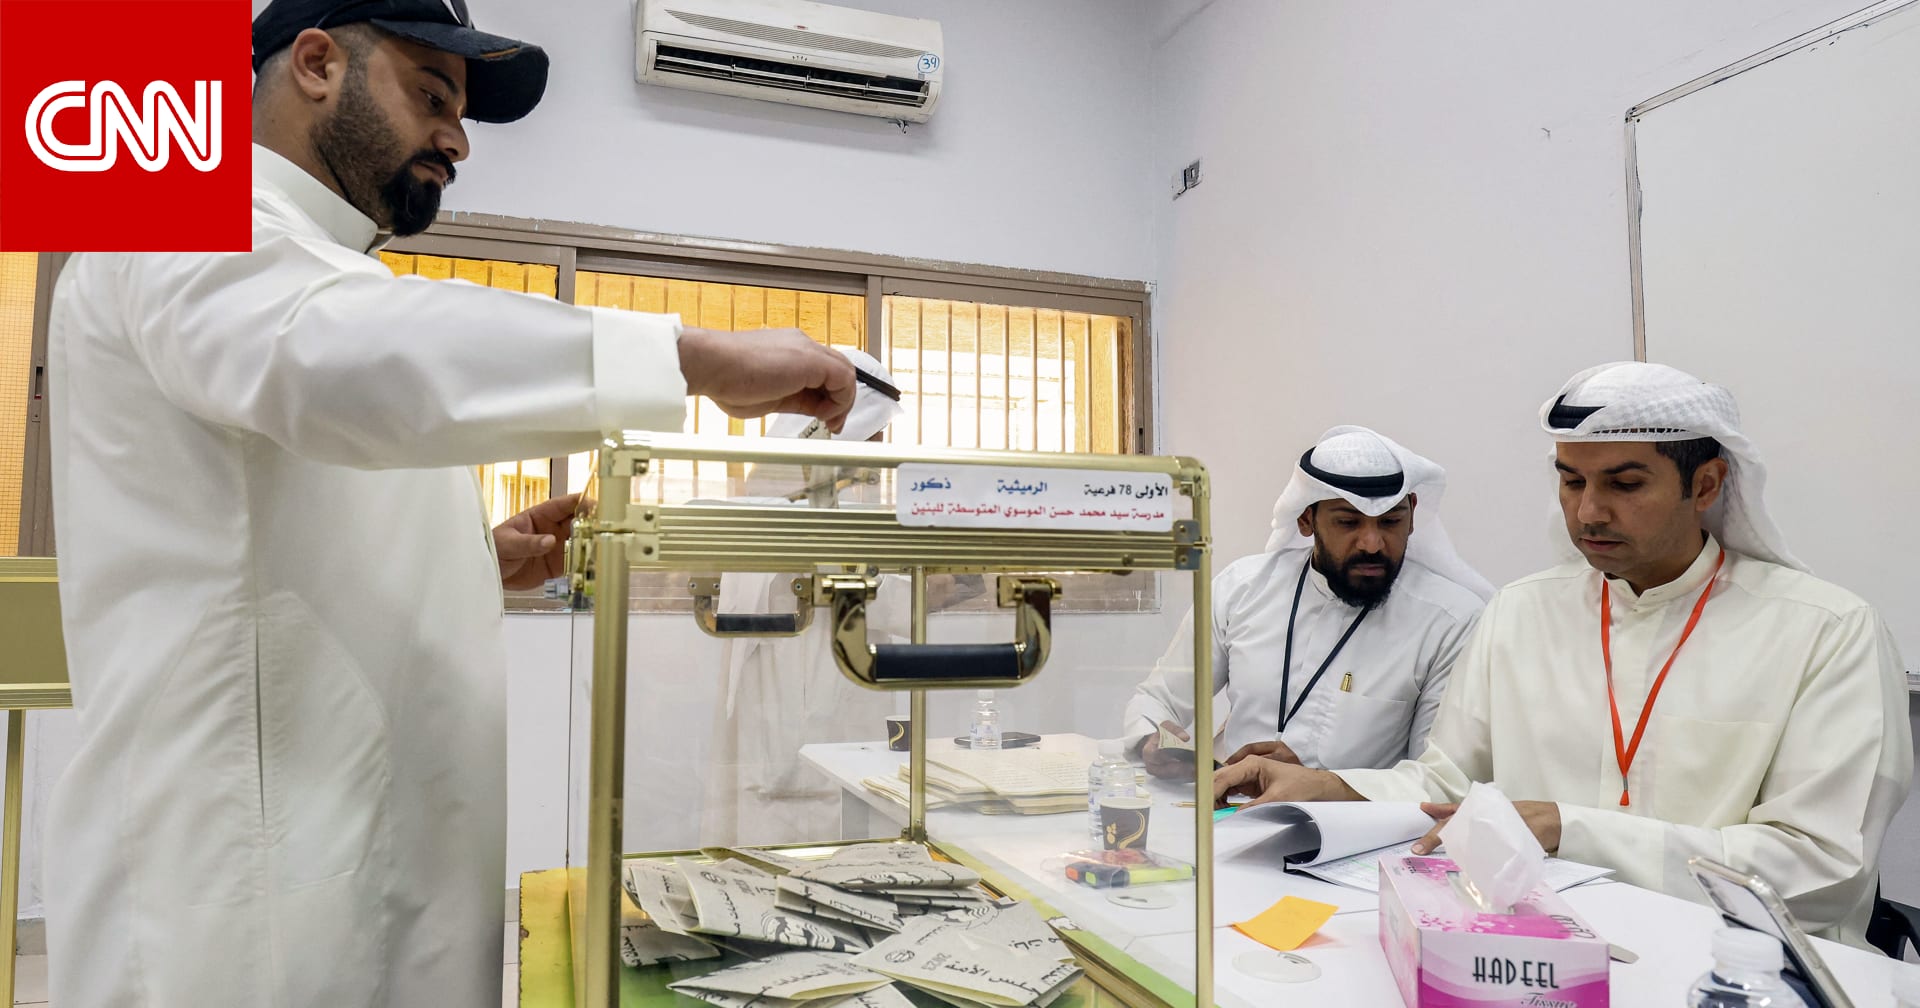 حكومة الكويت تعلق على أنباء حول نيتها لتعديل قانون الانتخاب وحرمان شريحة من المواطنين من المشاركة والترشح